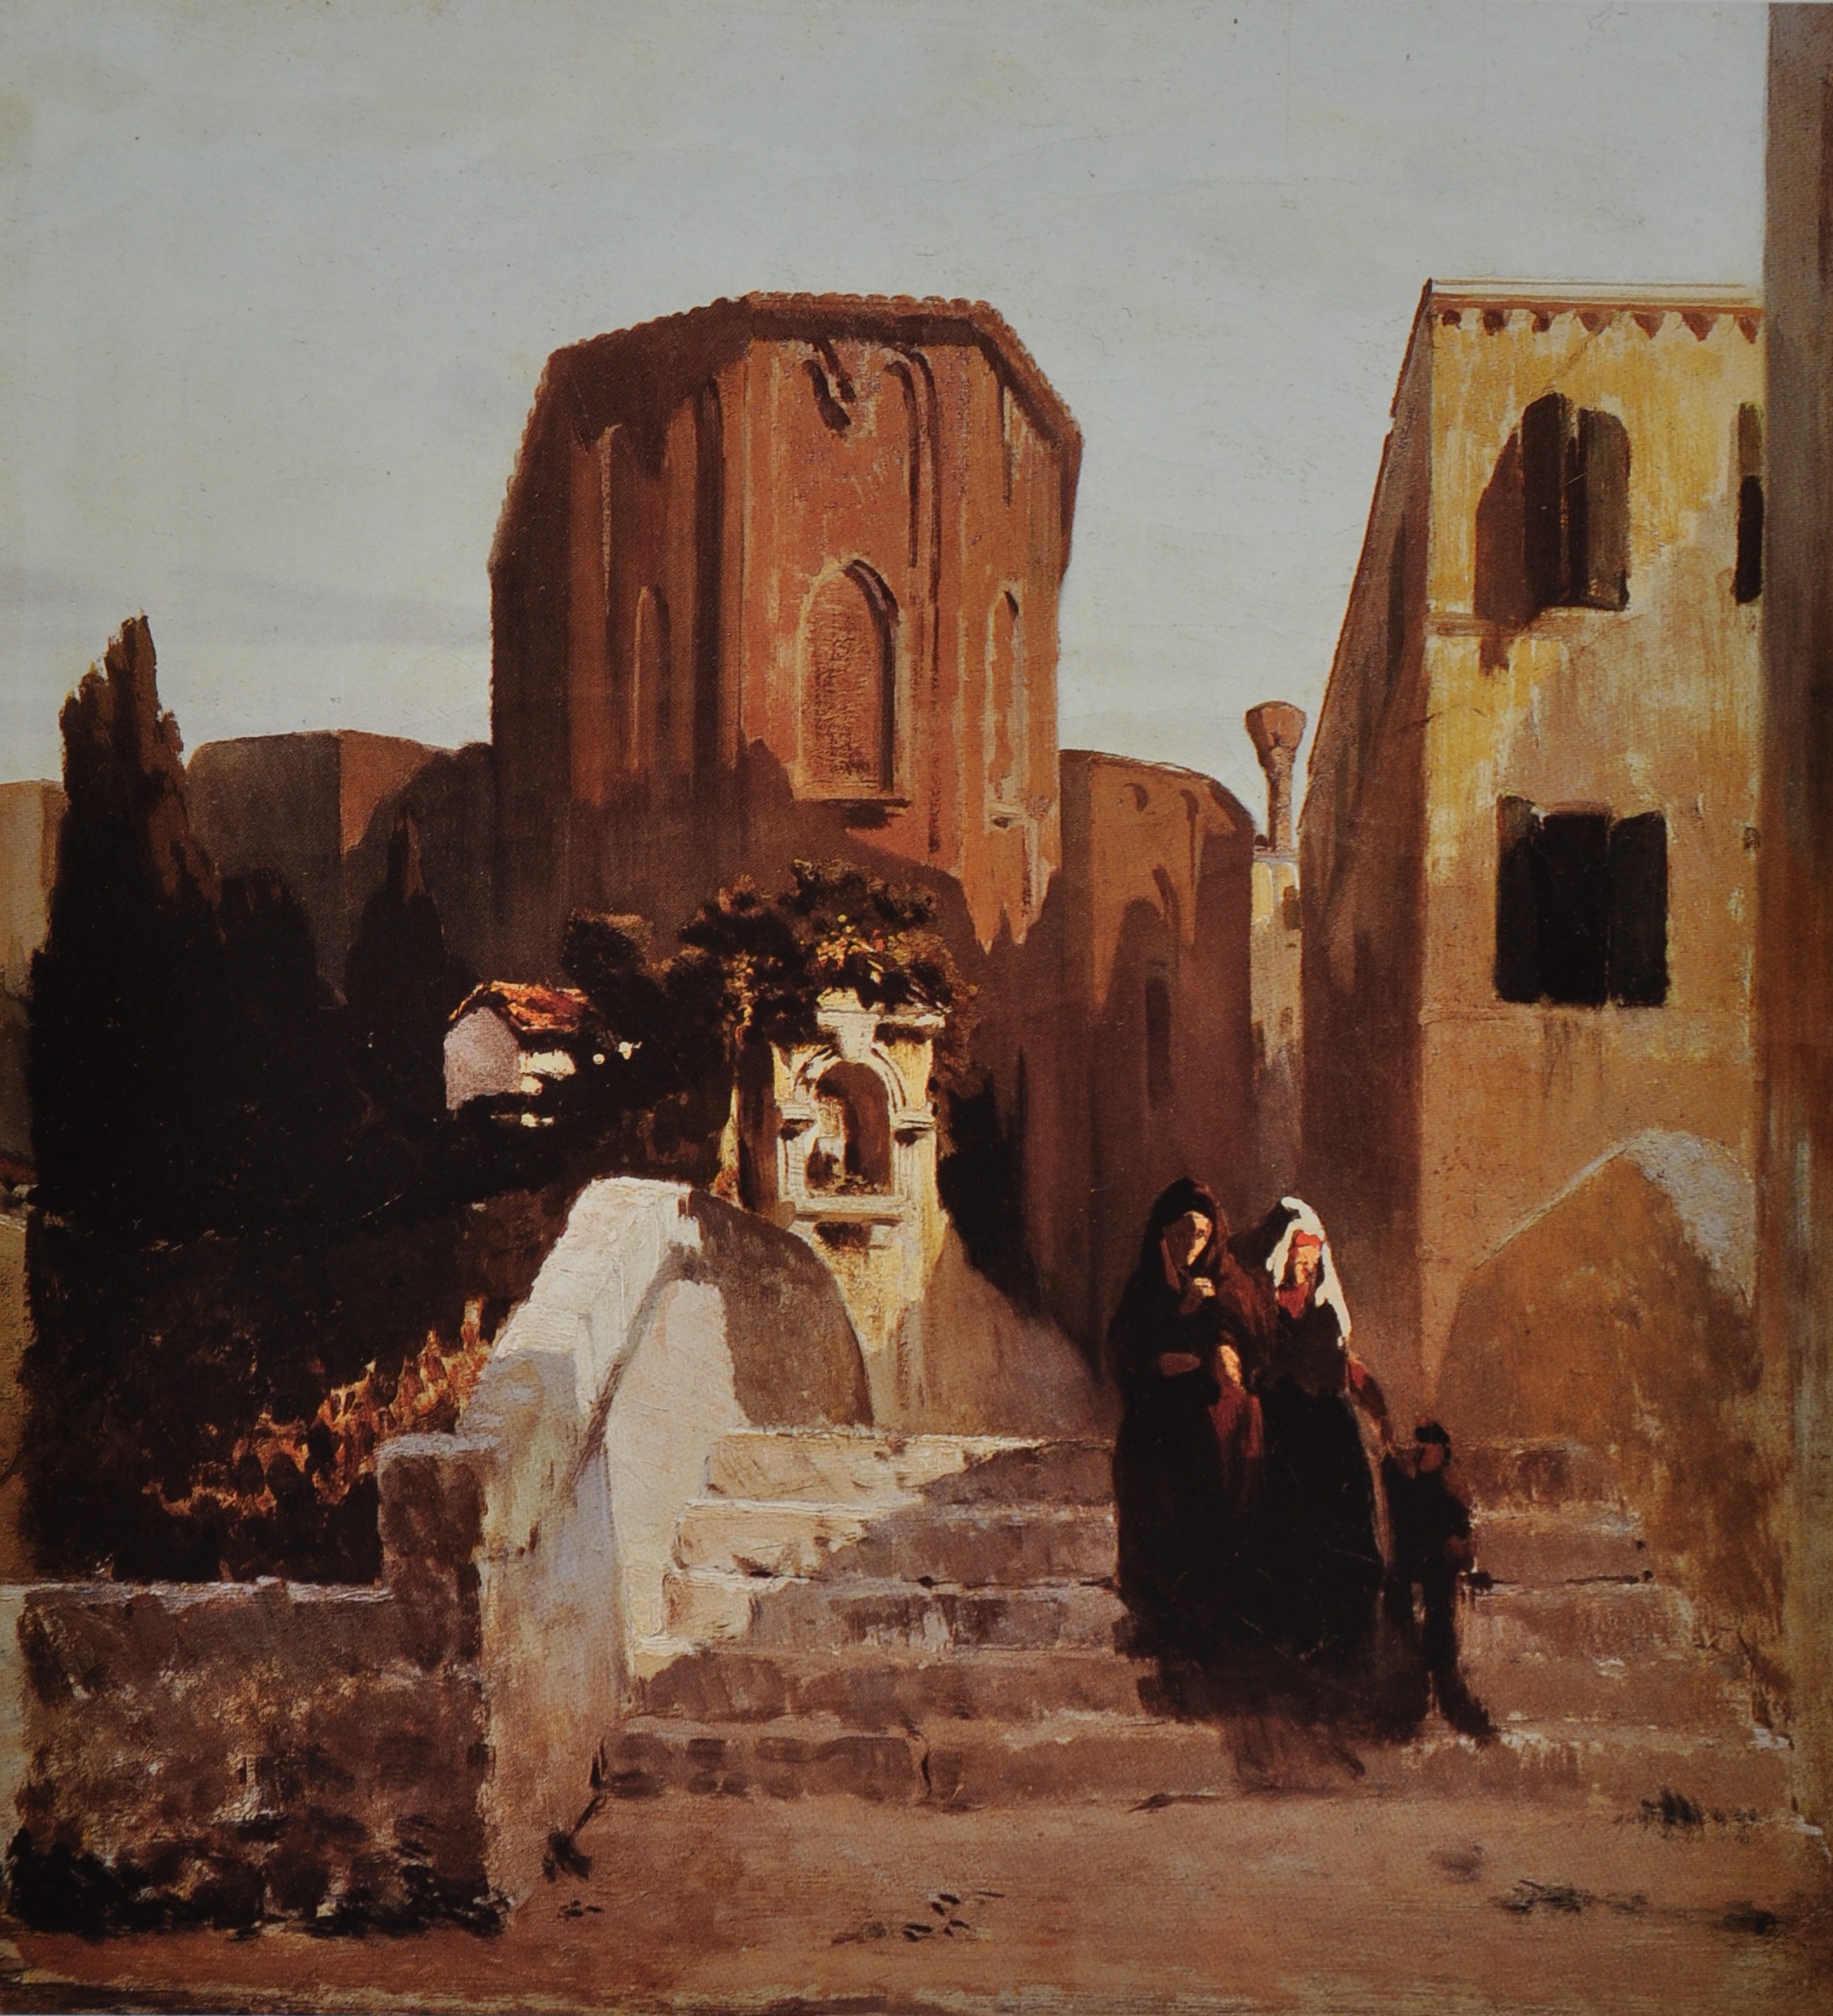 Fig. 1 Telemaco Signorini, Il Ponte della Pazienza a Venezia, 1856, oil on canvas, 39 x 36 cm, private collection